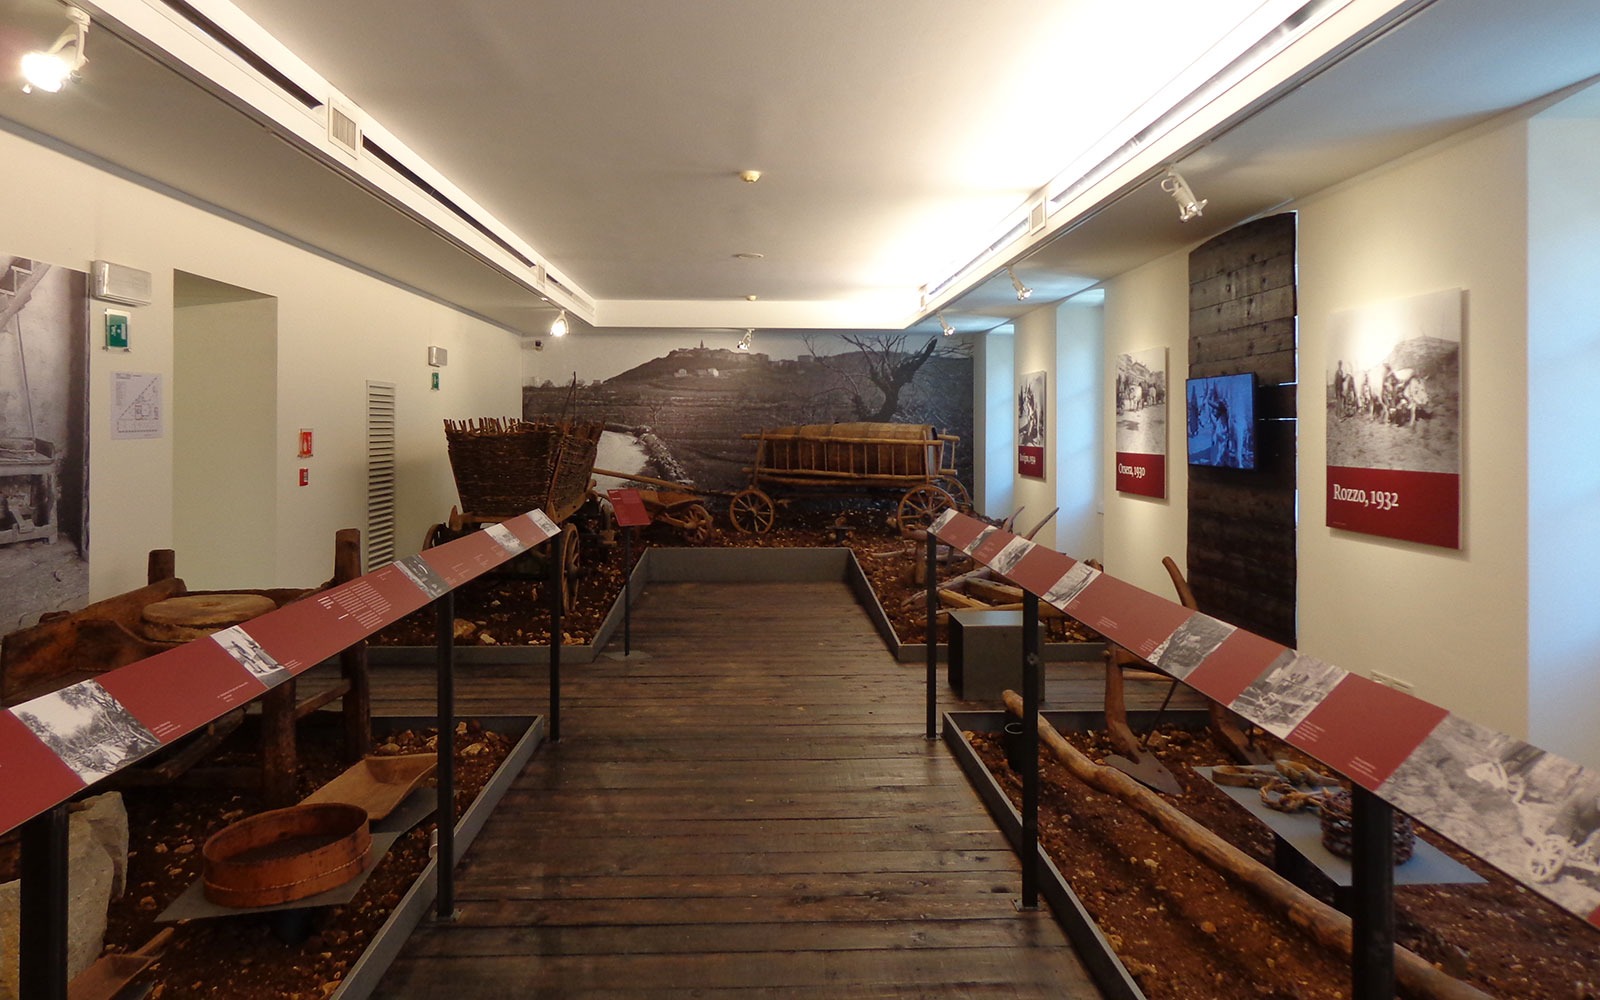 Museo della civiltà istriana fiumana e dalmata